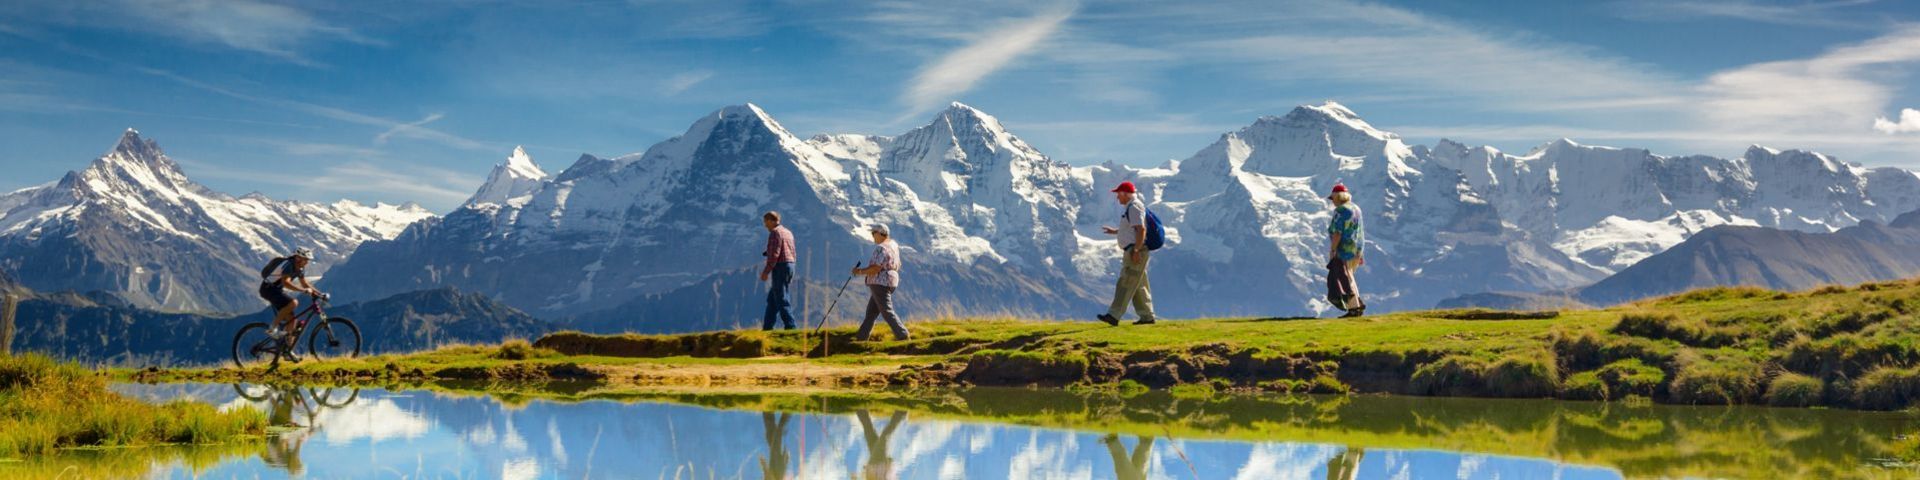 Wanderer am Jungfernjoch auf einer Schweiz Reise mit sz-Reisen